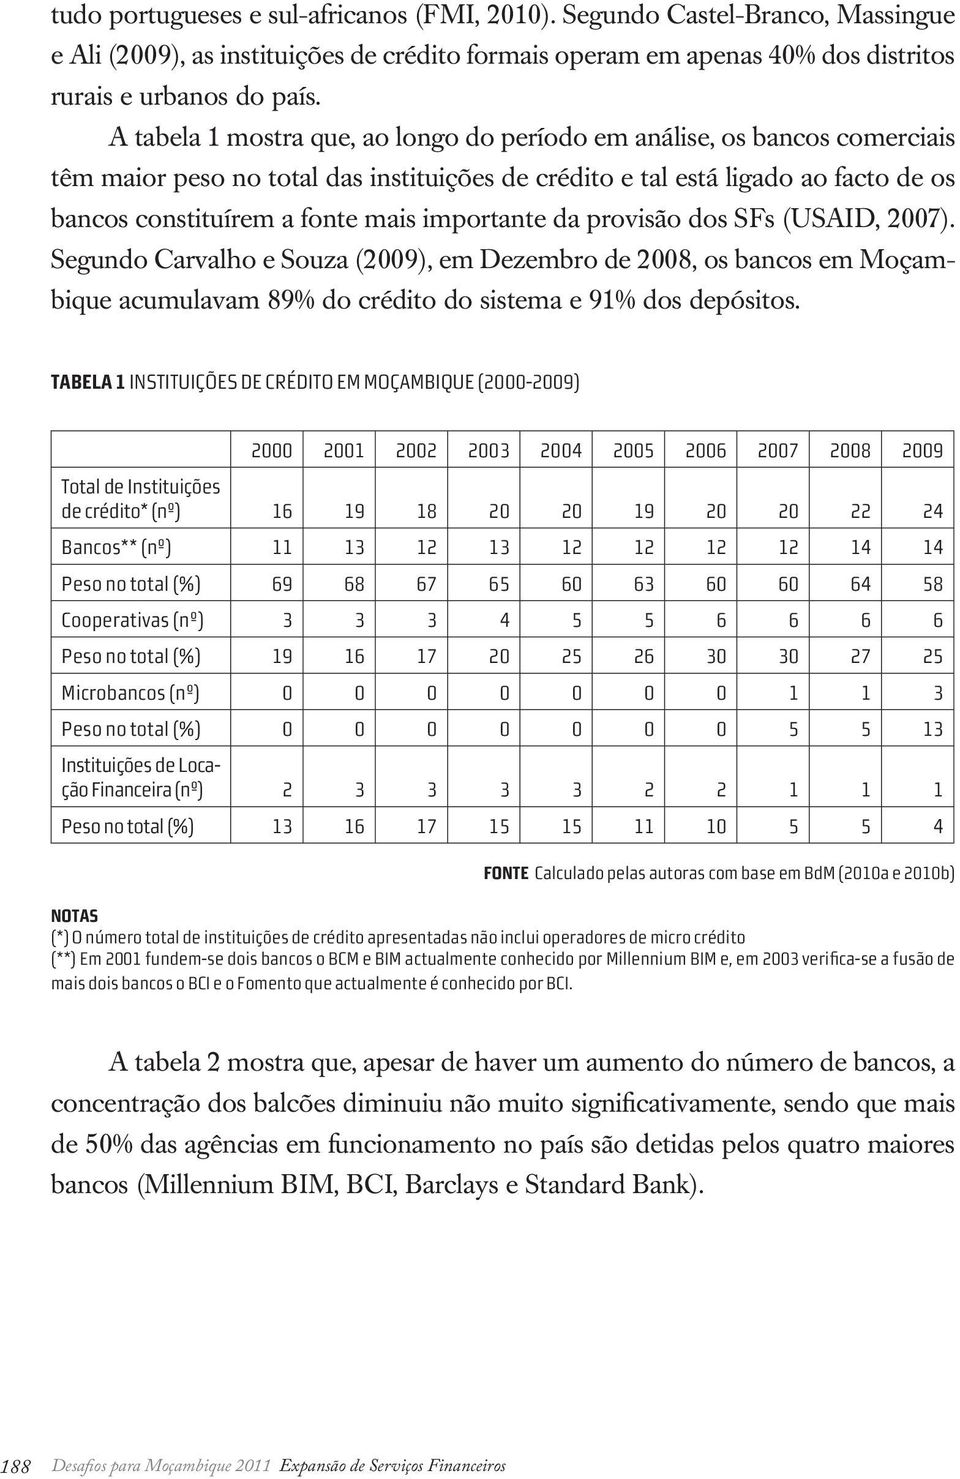 importante da provisão dos SFs (USAID, 2007). Segundo Carvalho e Souza (2009), em Dezembro de 2008, os bancos em Moçambique acumulavam 89% do crédito do sistema e 91% dos depósitos.